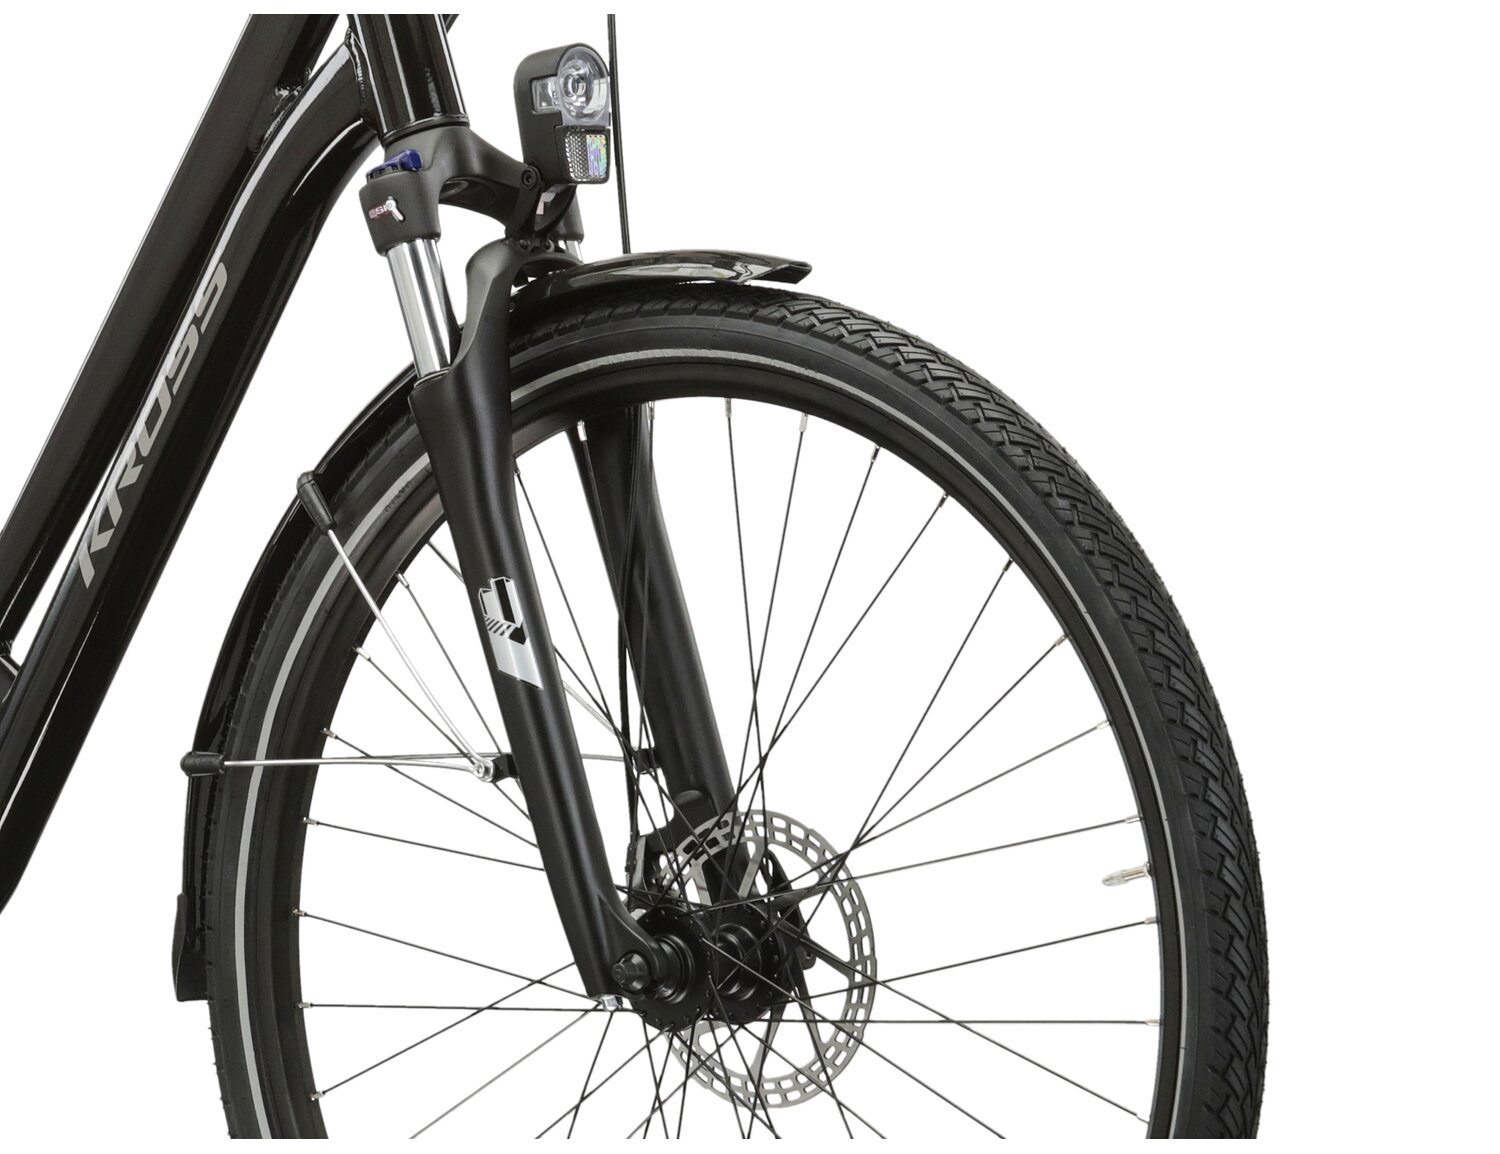 Aluminowa rama, amortyzowany widelec SR SUNTOUR NEX HLO o skoku 63mm oraz opony w elektrycznym rowerze miejskim Ebike City KROSS Sentio Hybrid 1.0 504 Wh 